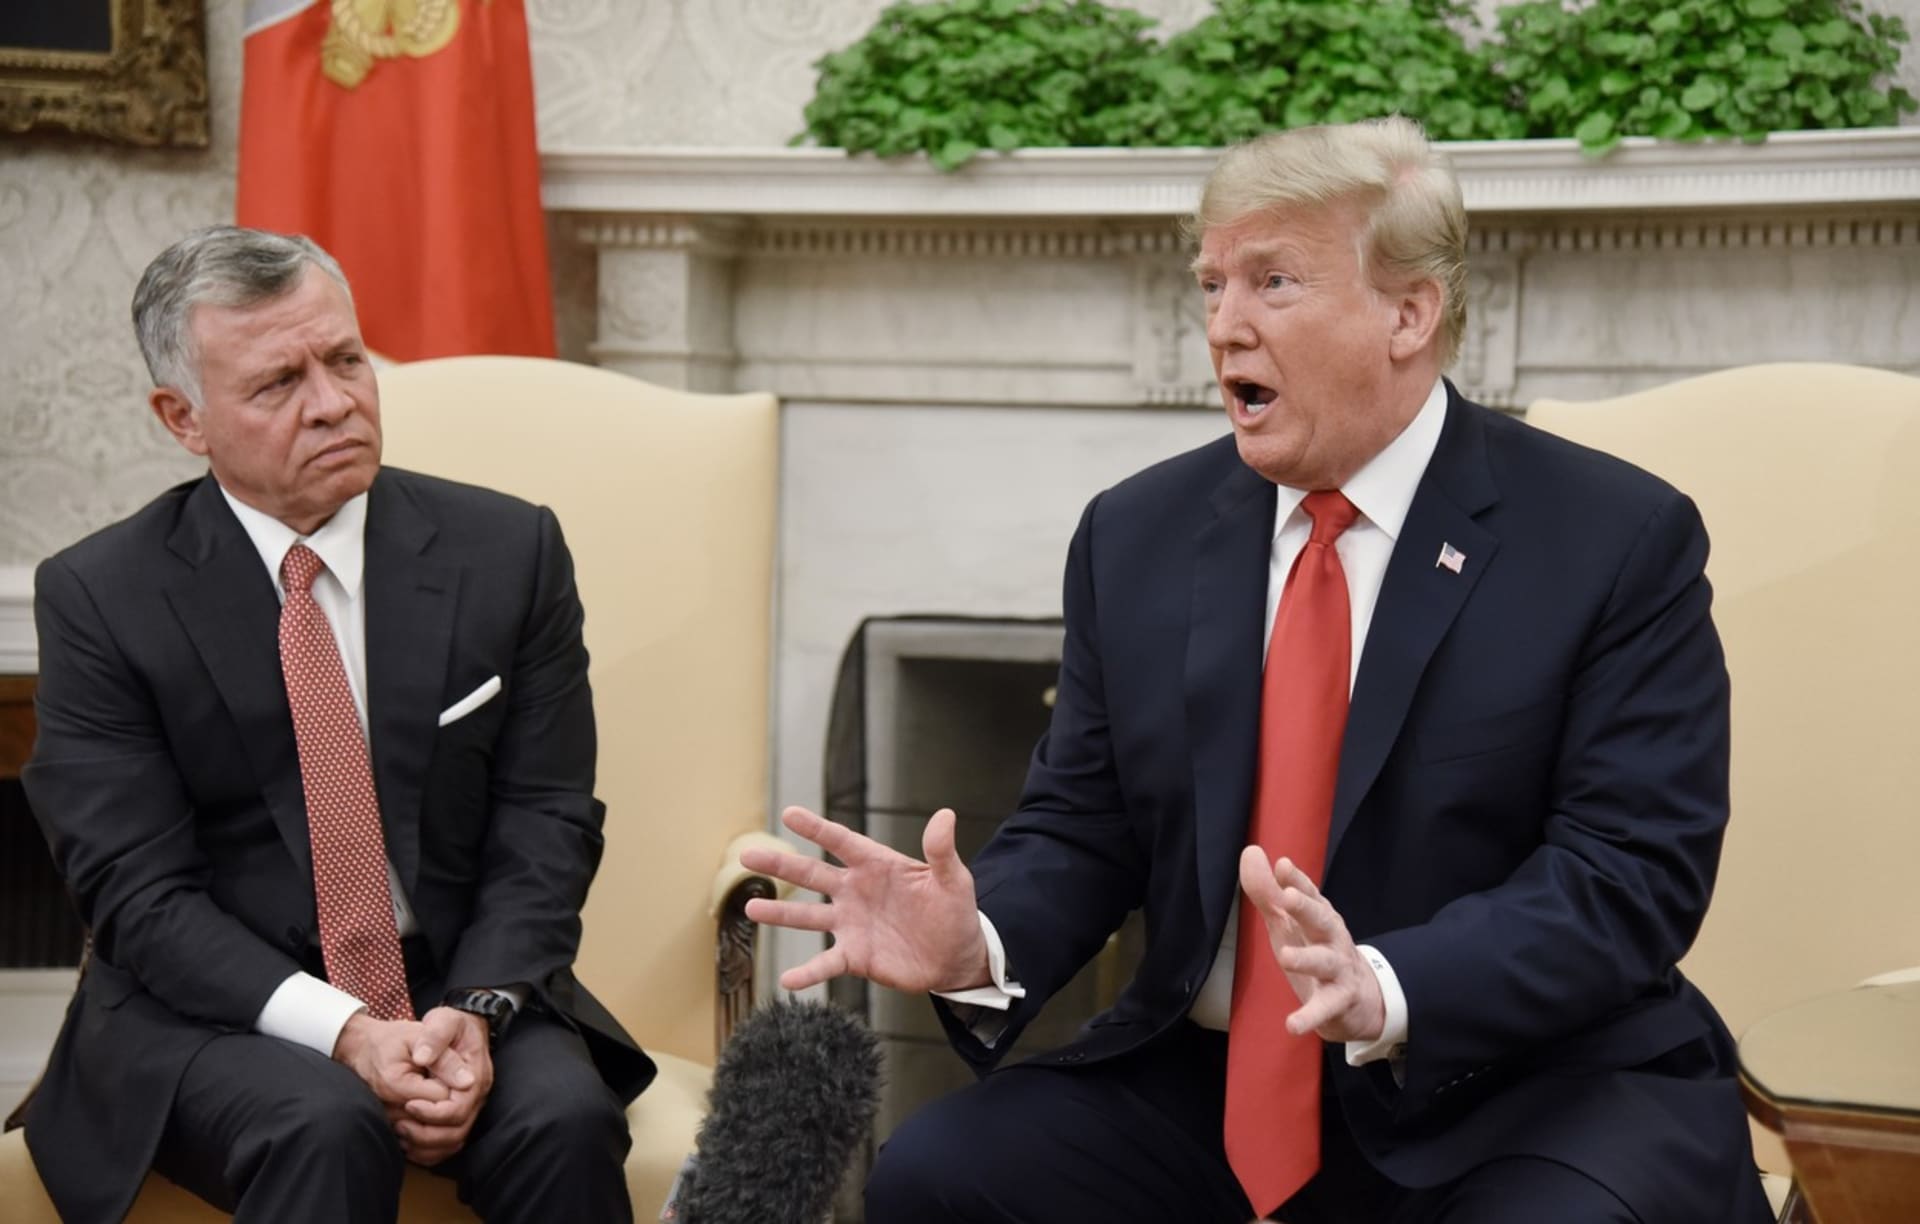 Bývalý americký prezident Donald Trump a jordánský král Abdalláh II. během setkání v Bílém domě v roce 2018